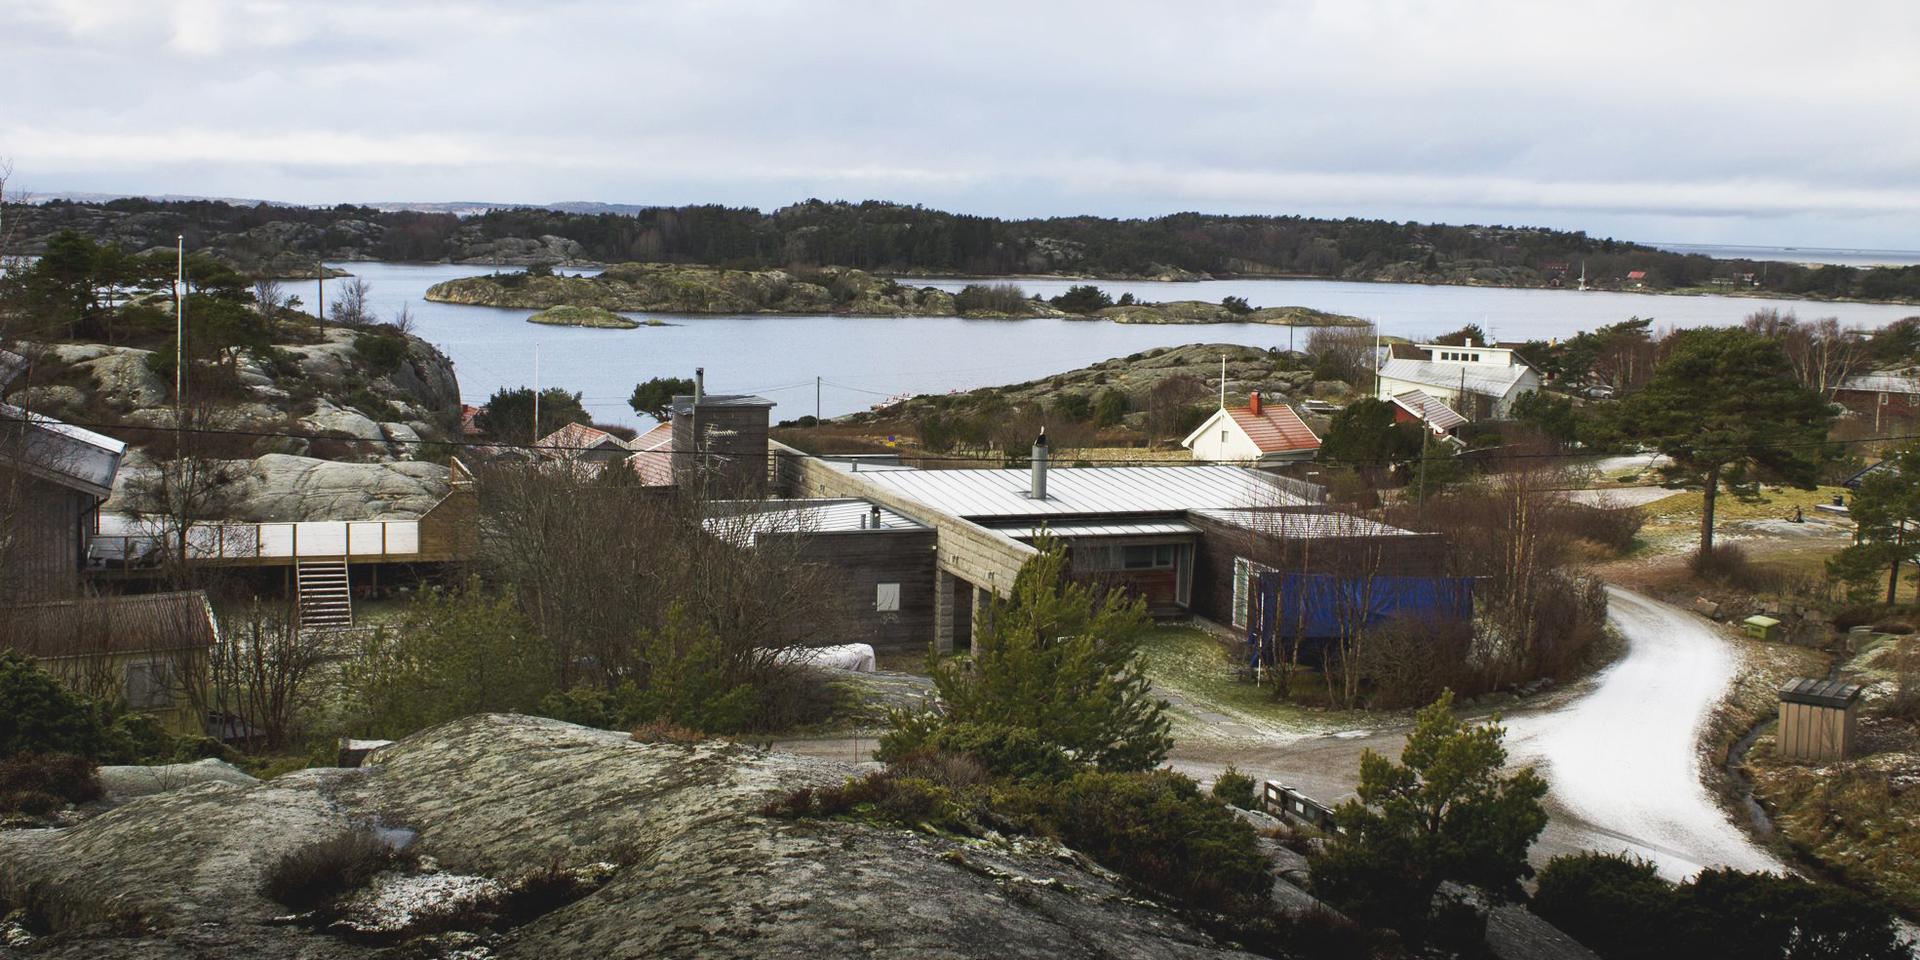 Det omdiskuterade huset i Båtviken, Kebal, fick efter femton års väntan sitt bygglov i fjol - vilket överklagades till länsstyrelsen. Ärendet är ännu inte avgjort.